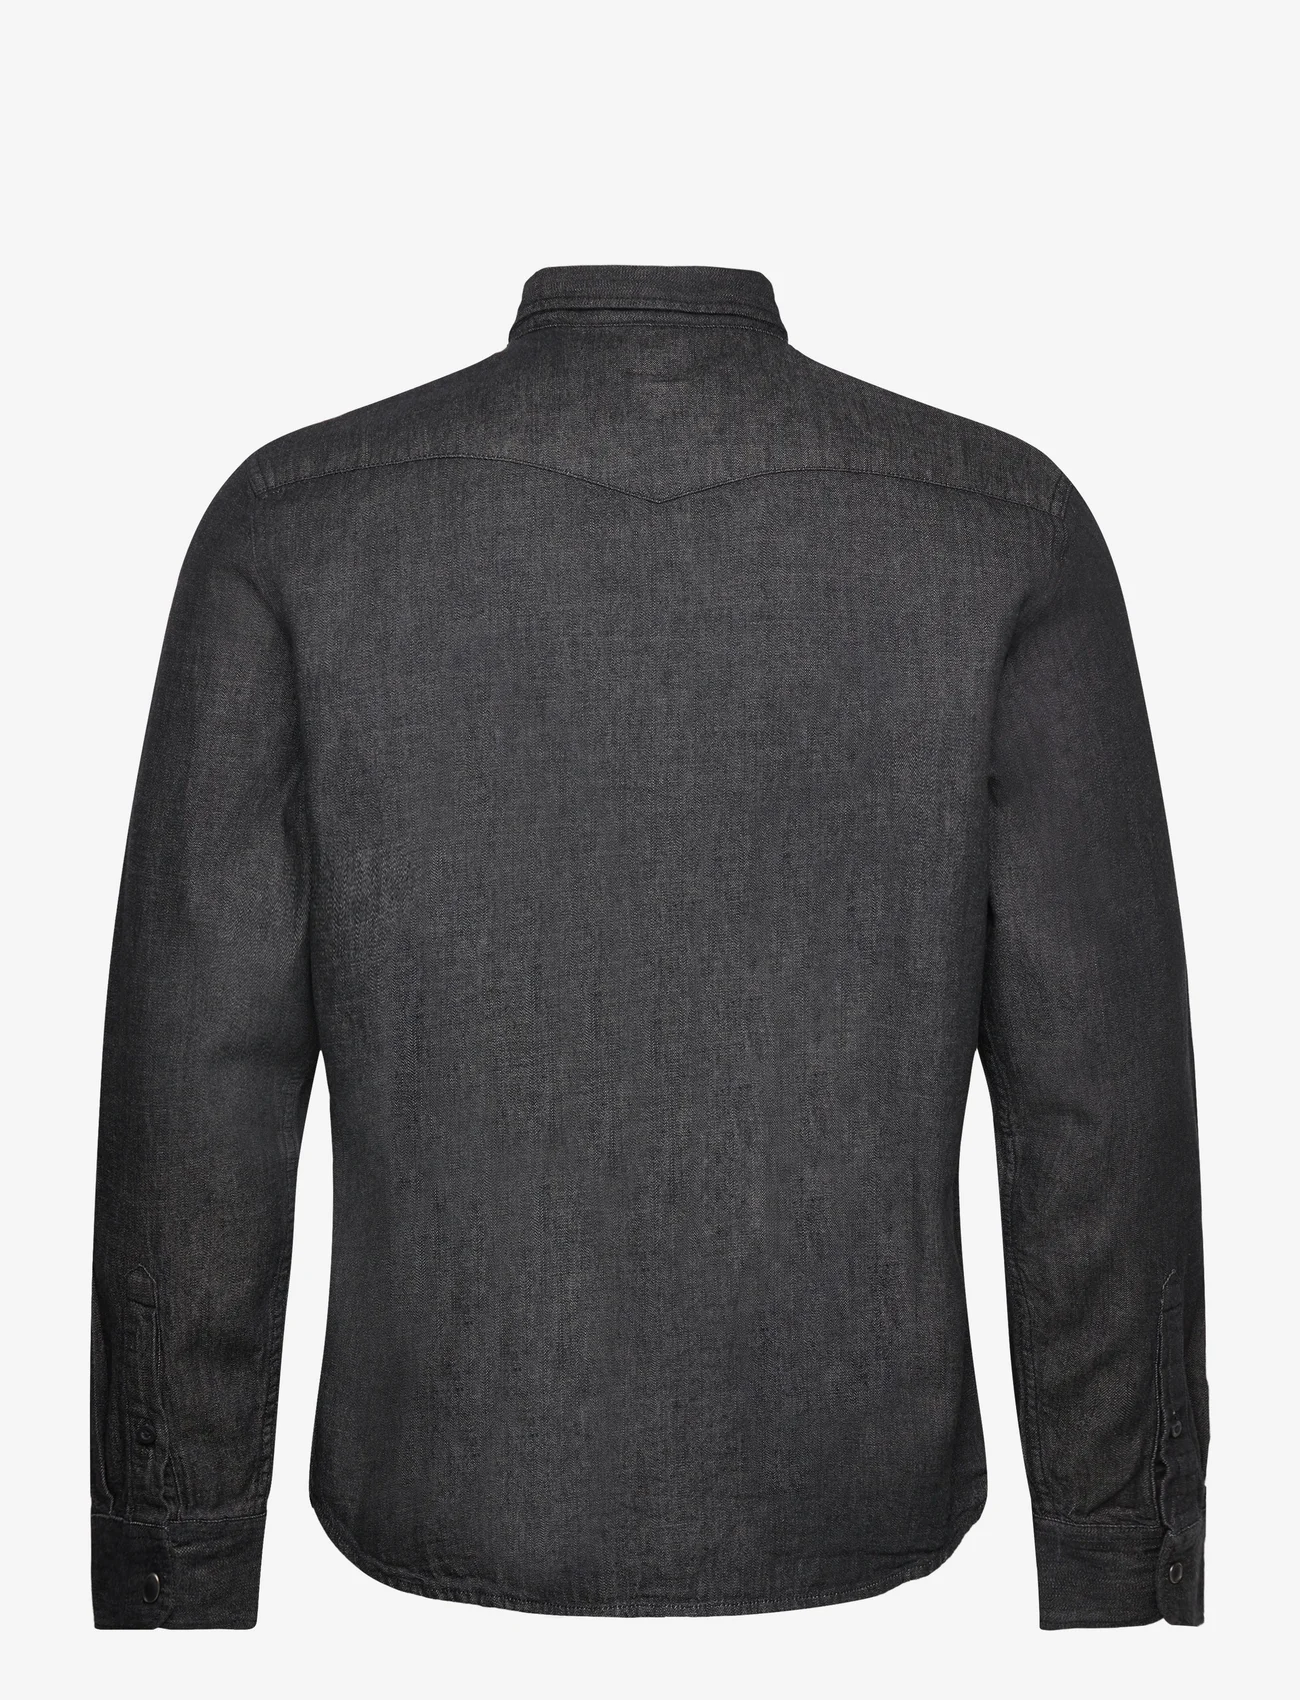 Lee Jeans - REGULAR WESTERN SHIRT - casual skjorter - washed black - 1